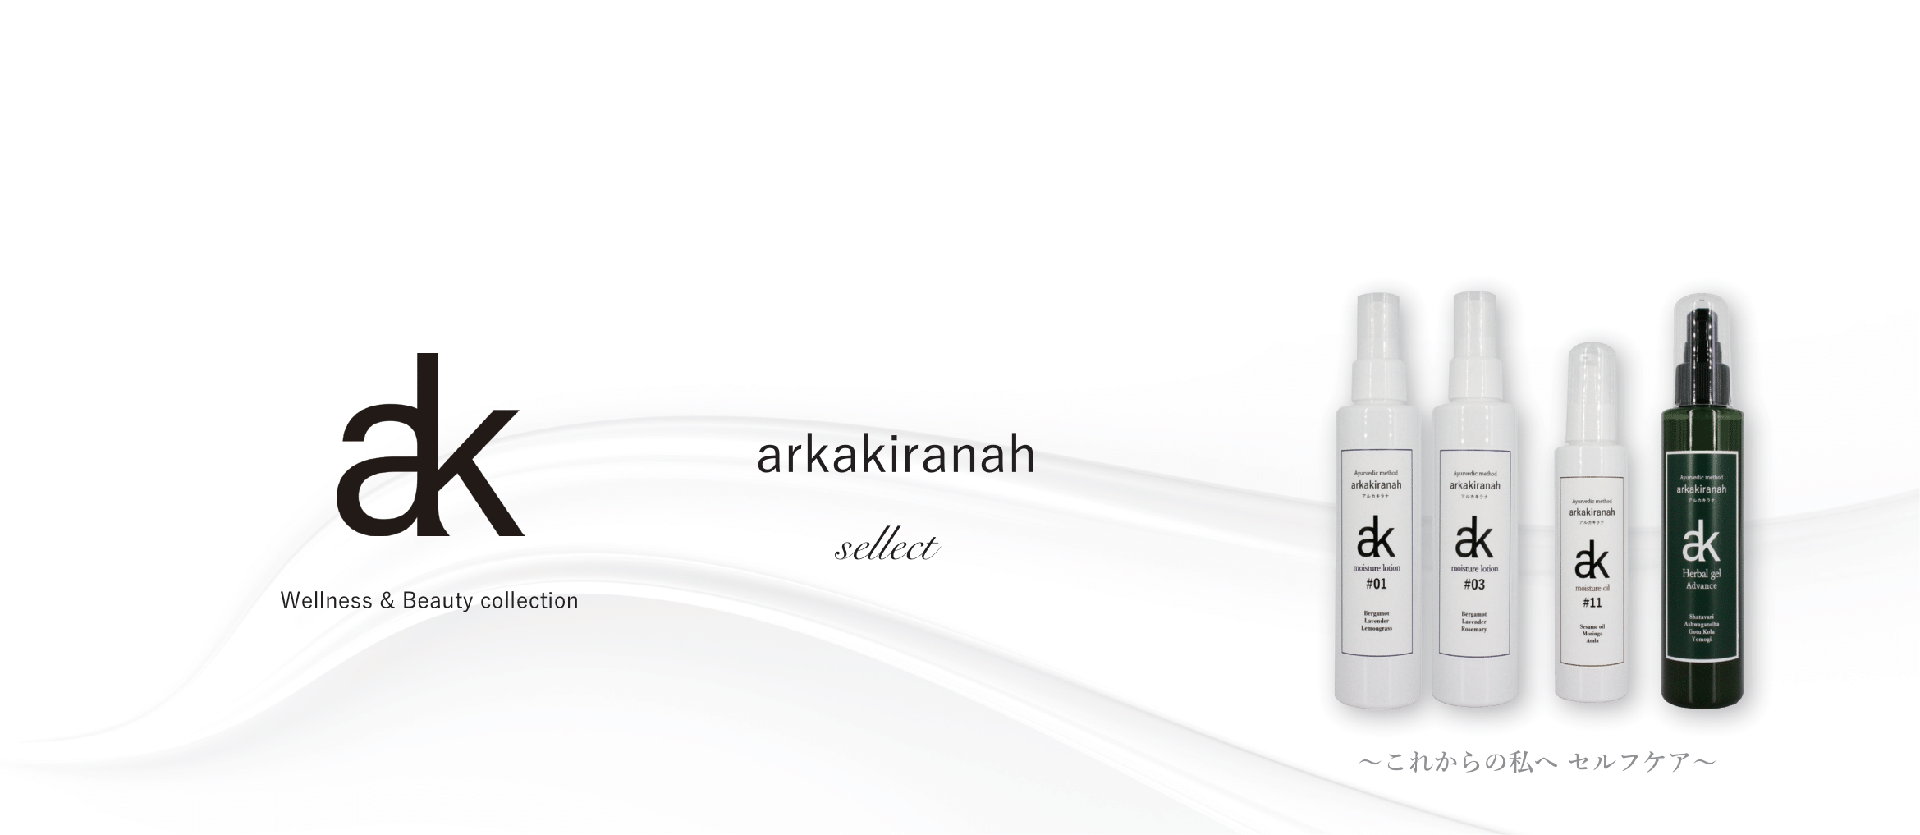 arkakiranah Products